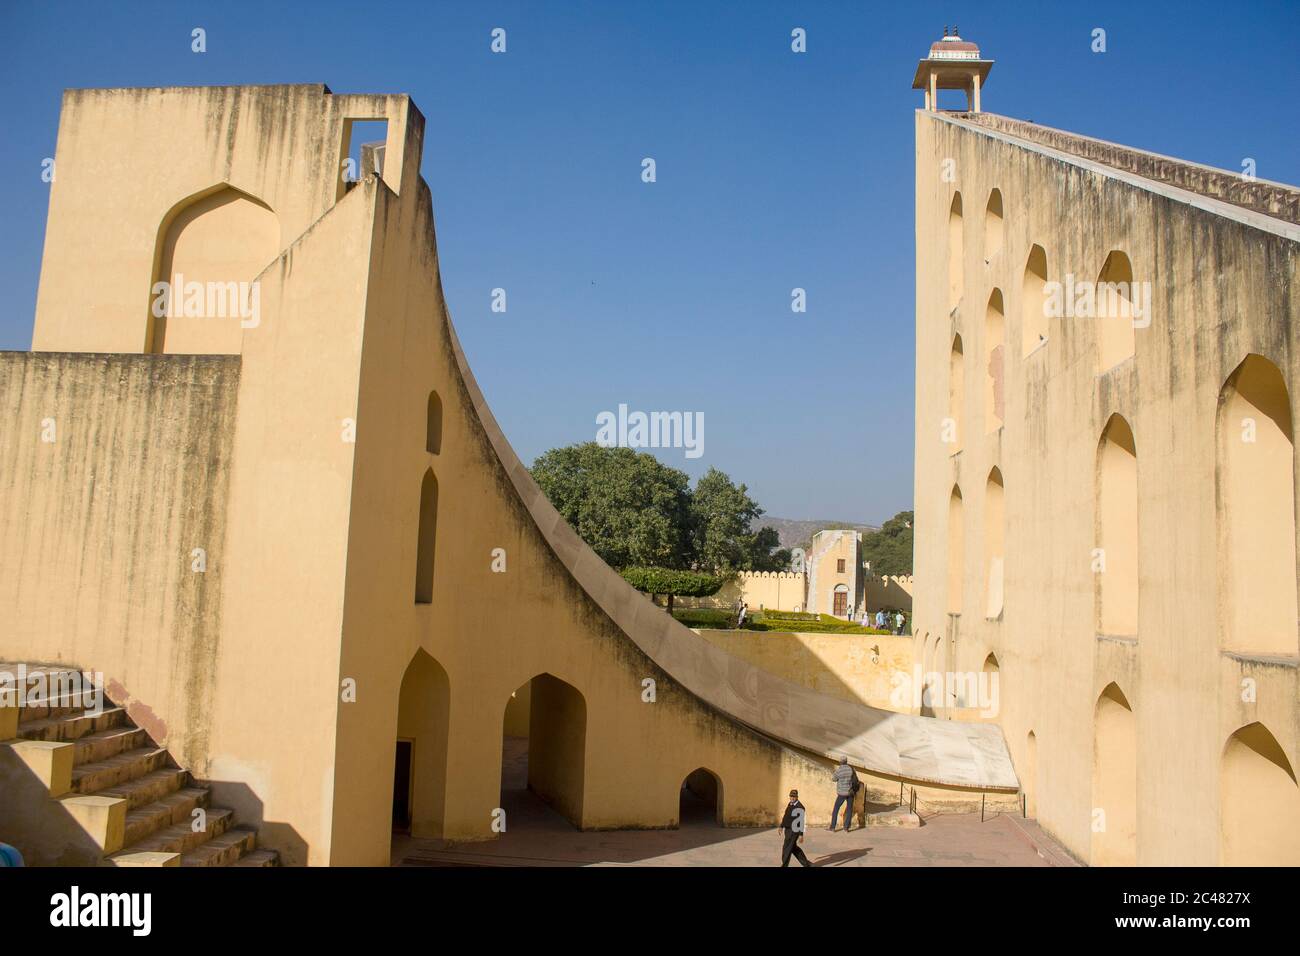 Jantar Mantar, un site d'observation astronomique, construit au début du XVIIIe siècle à Jaipur Inde; Vrihat samrat yantra (le plus grand cadran solaire du monde) Banque D'Images